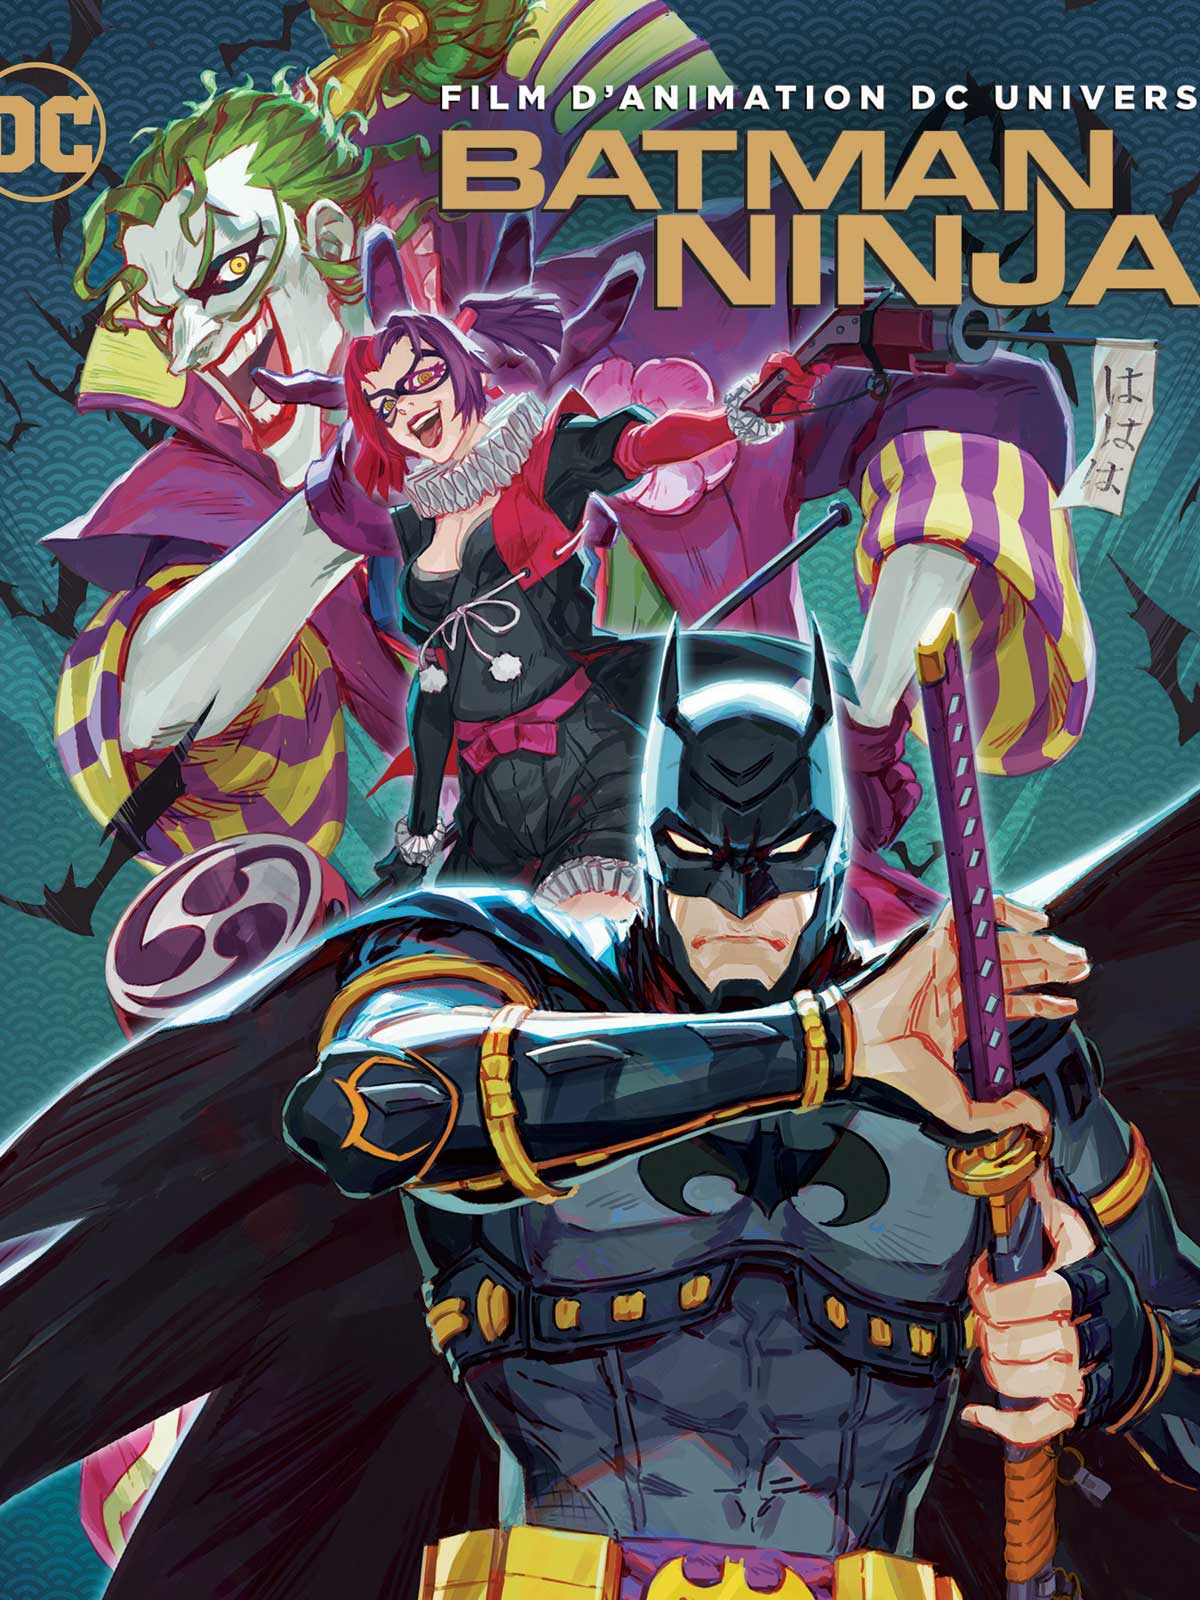 Résultat de recherche d'images pour "batman ninja"